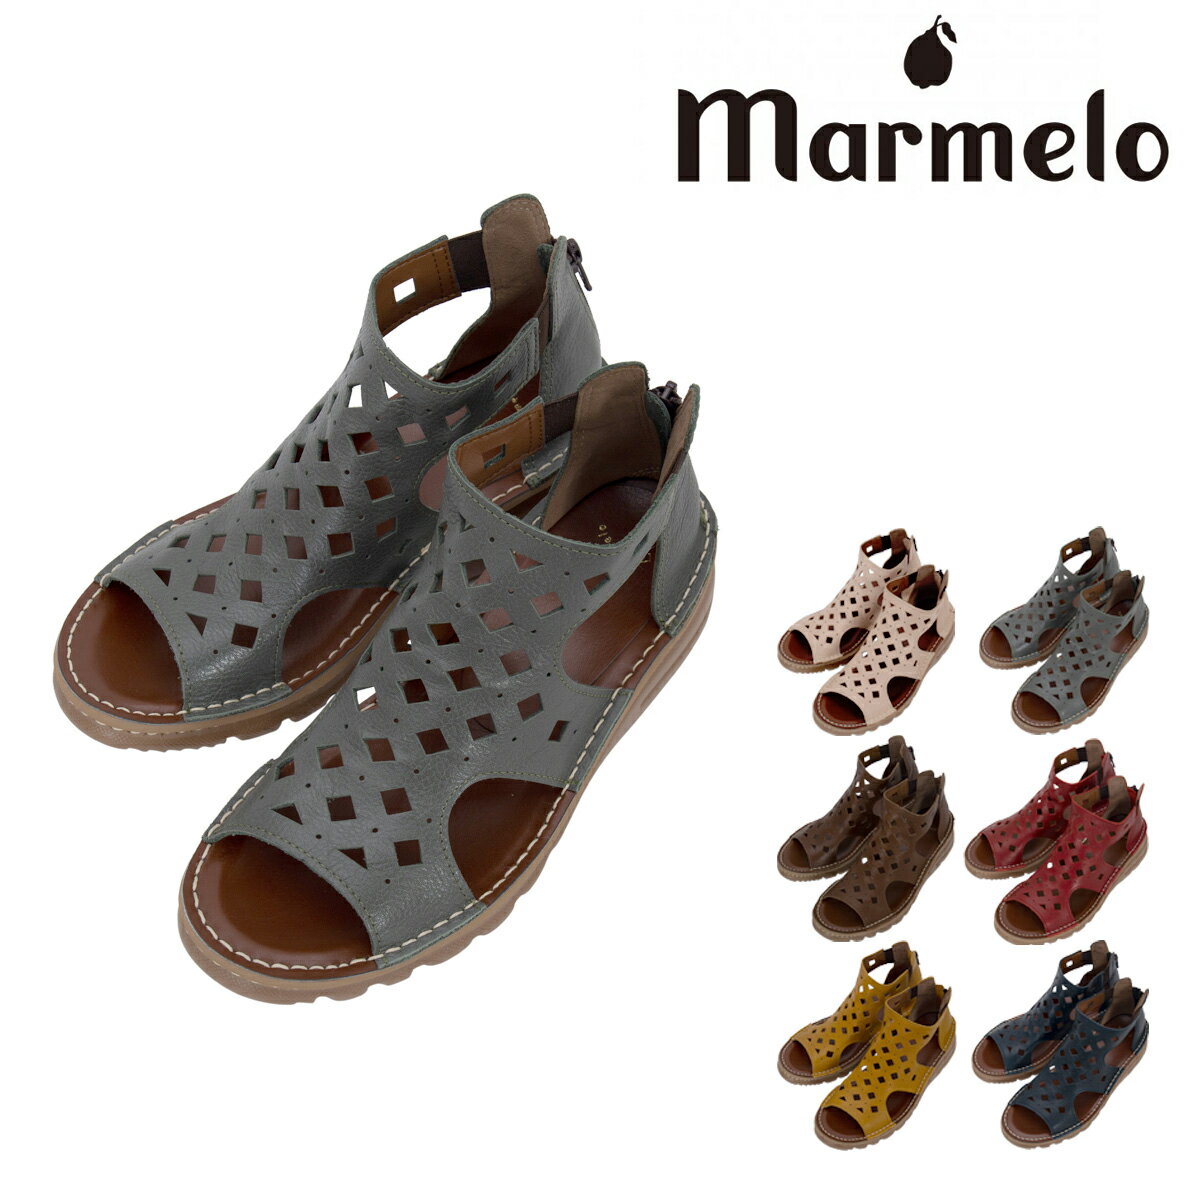 マルメロ パンチングサンダル 日本製 レディース 06-04-30004 marmelo 靴 シューズ レザー[PO10]